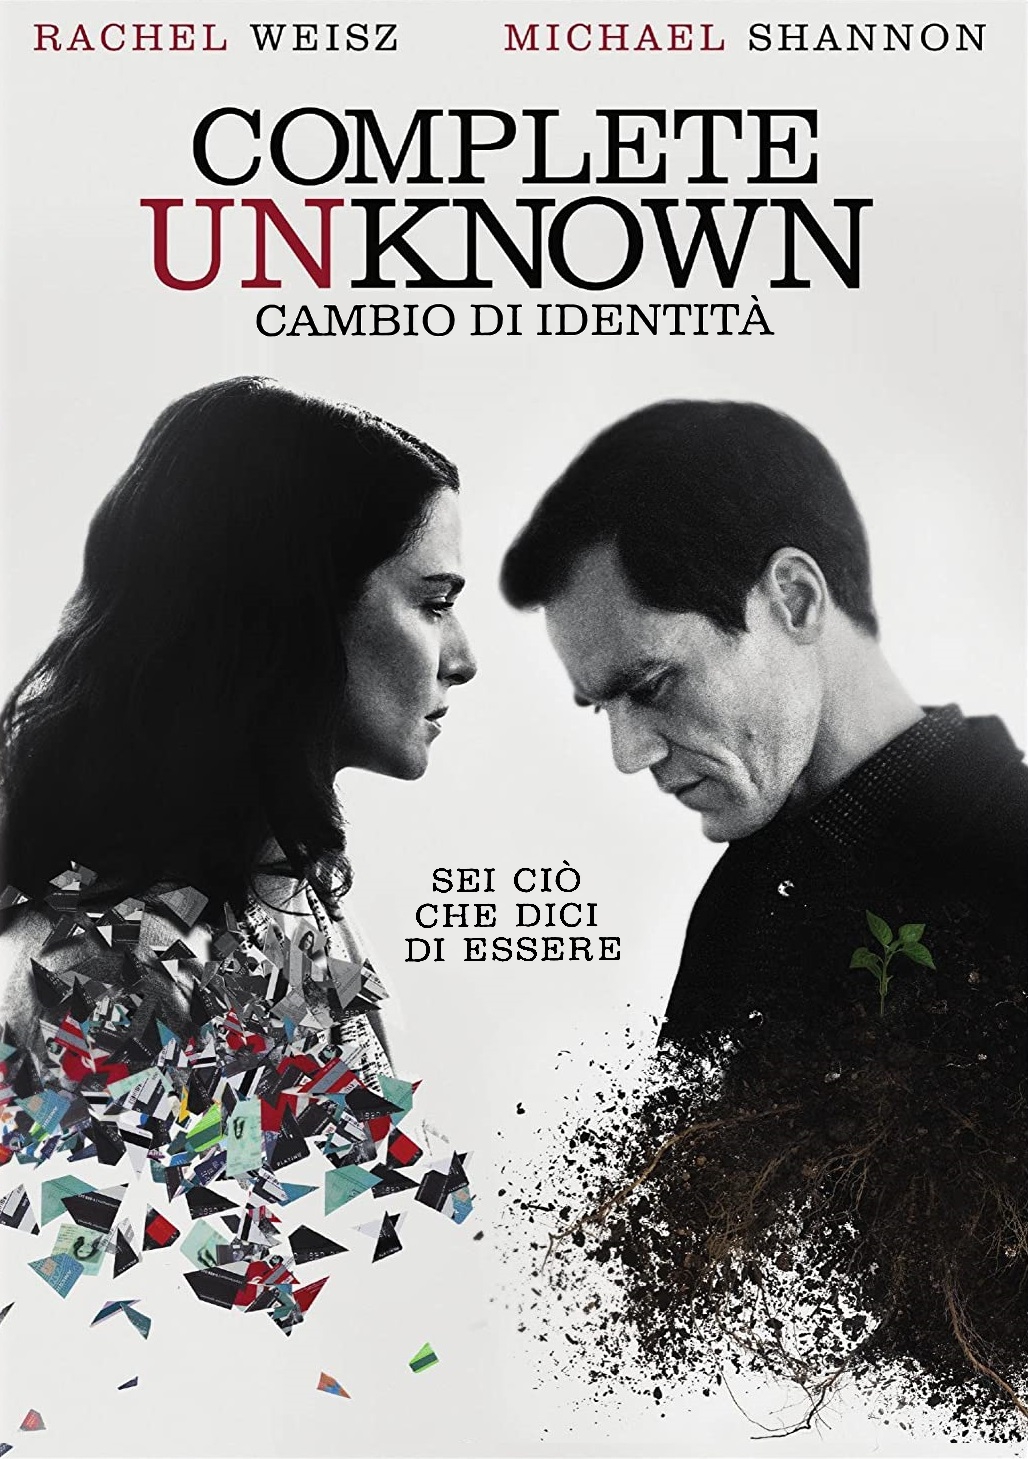 Complete Unknown – Cambio di identità [HD] (2016)